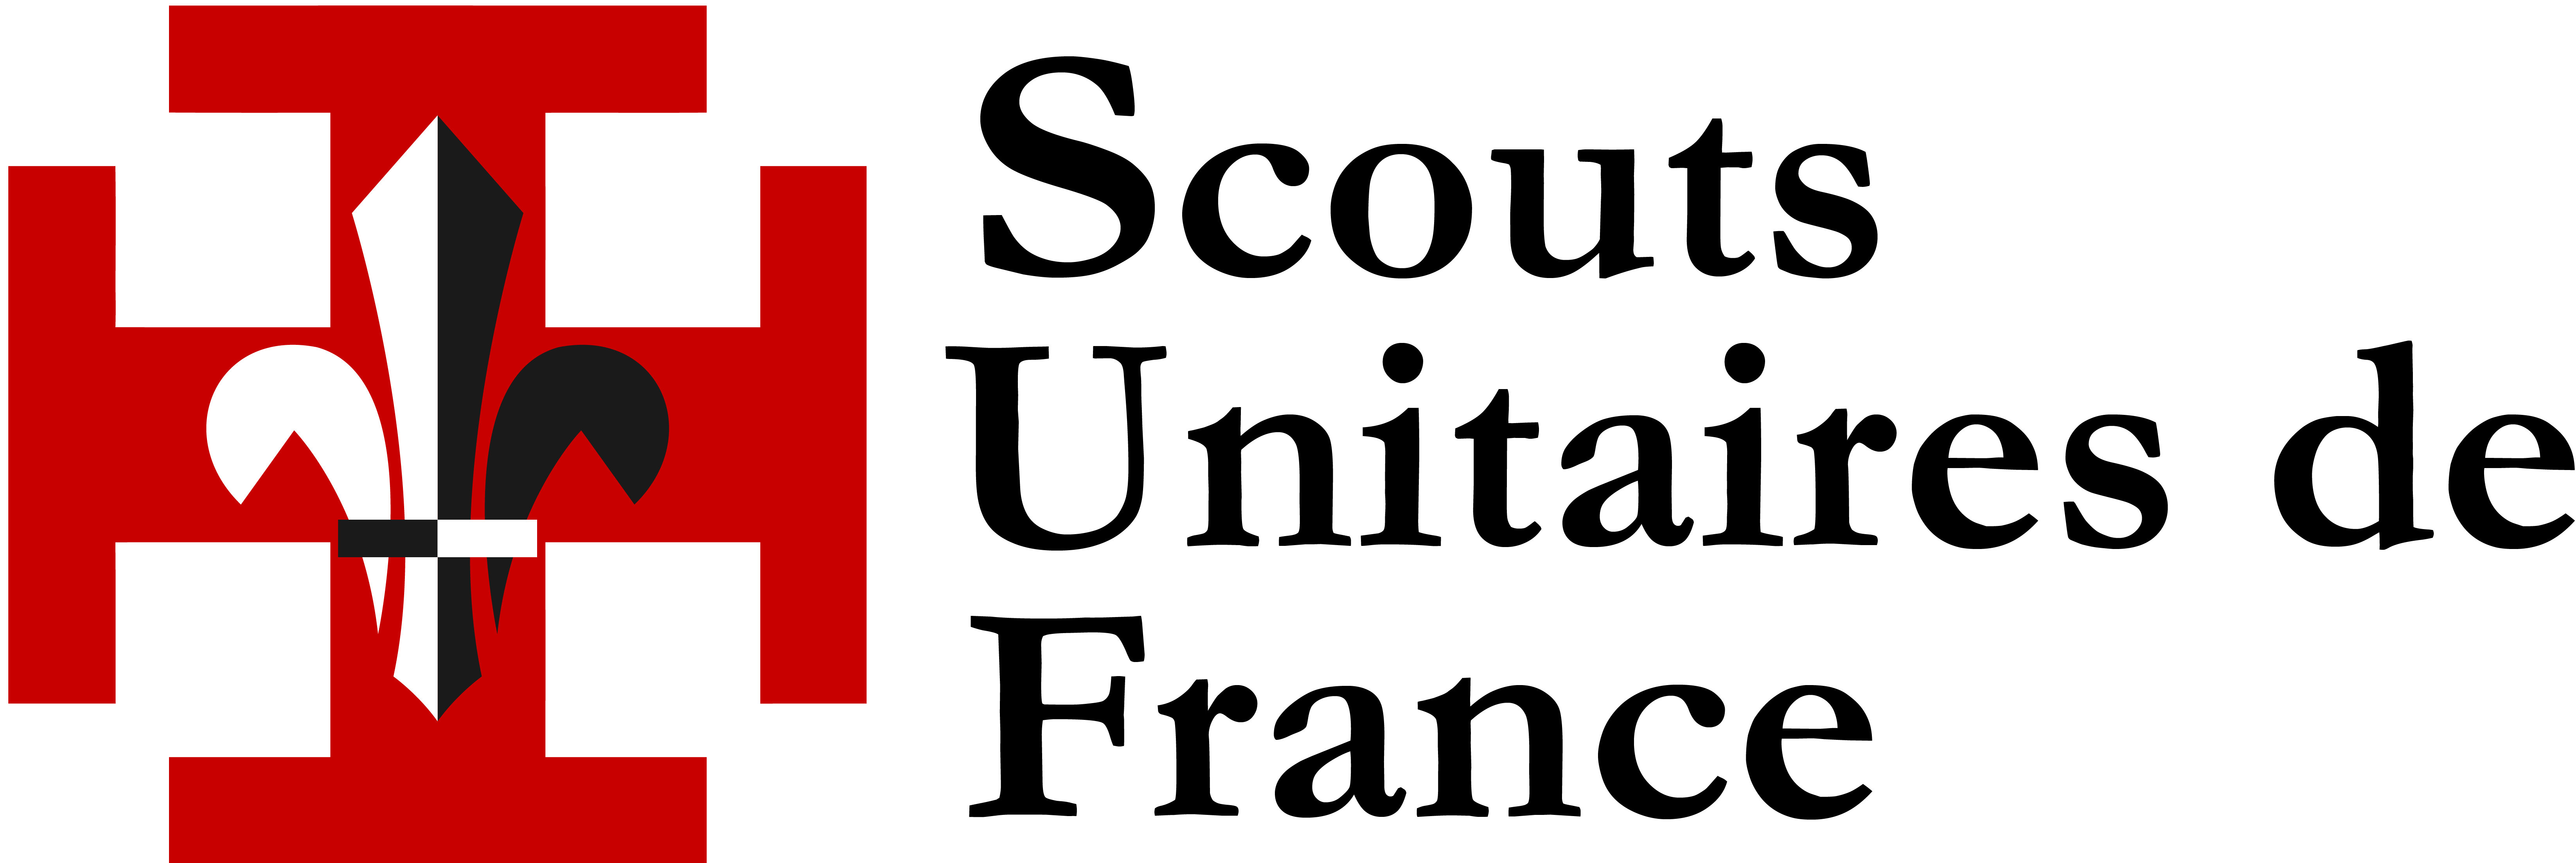 Les Scouts Unitaires de France